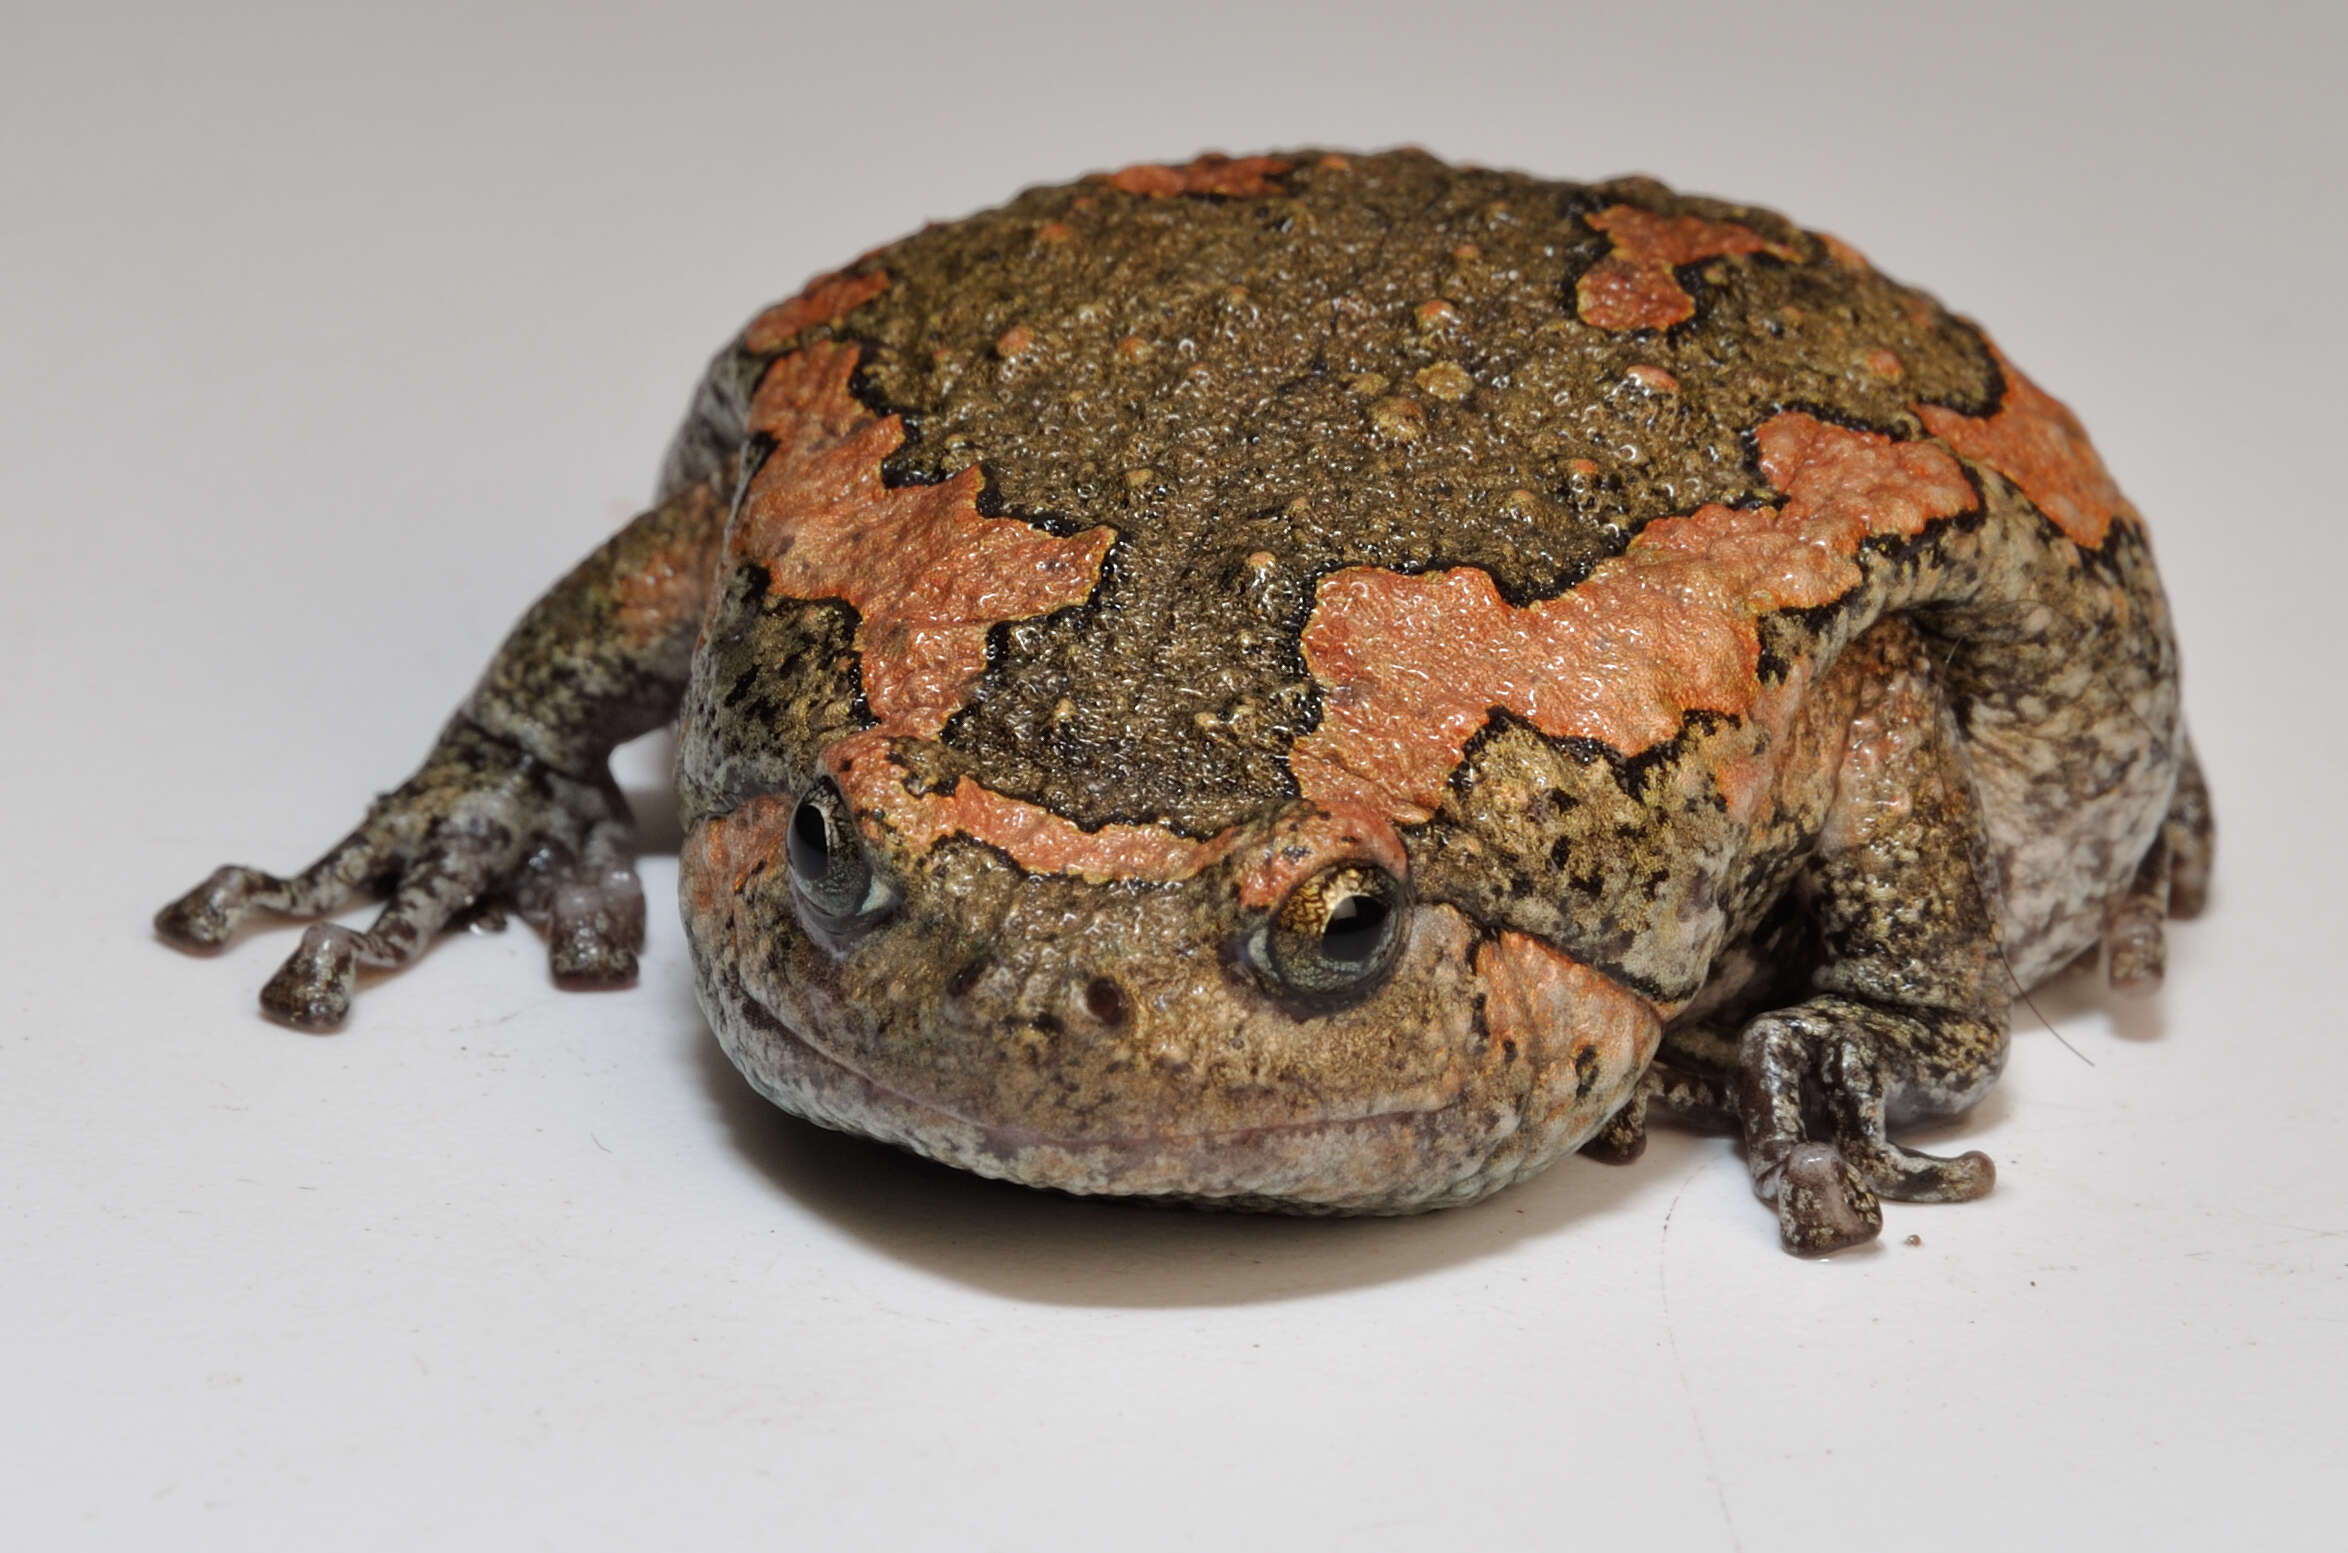 Image of Sri Lankan Bullfrog